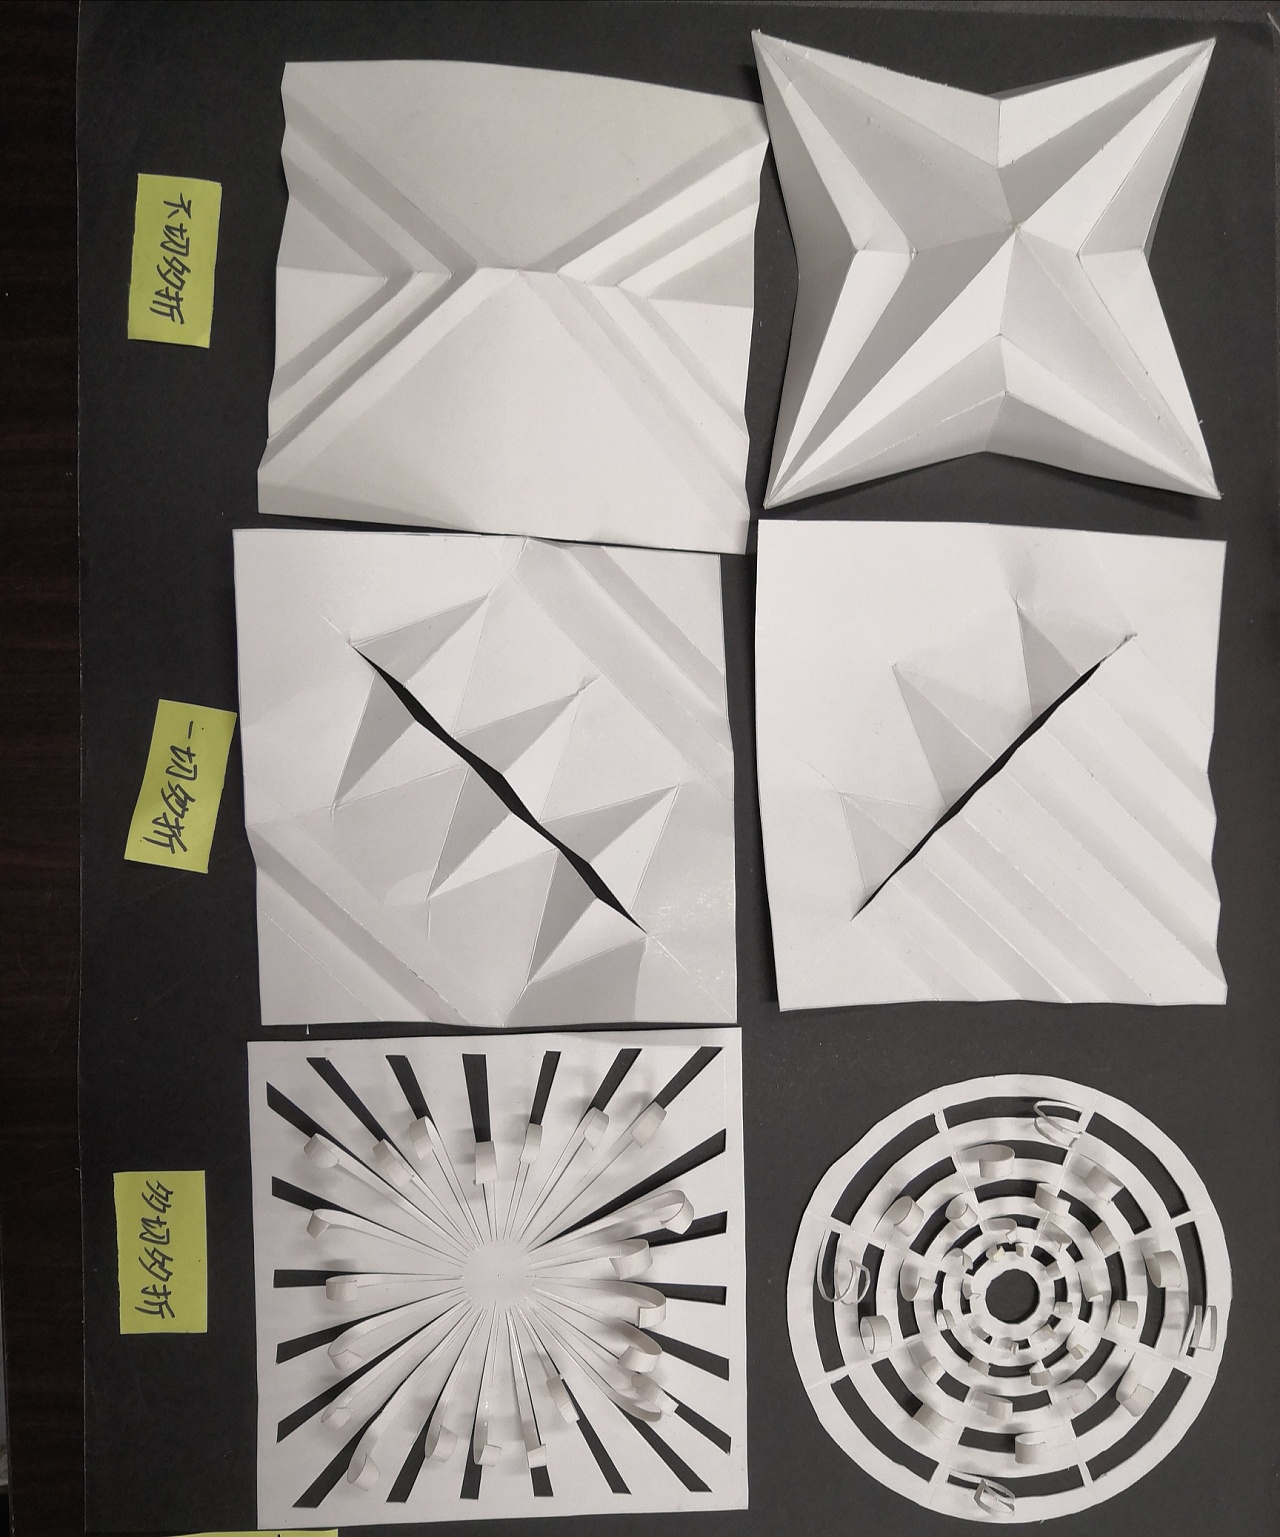 怎么做有趣的手工折纸呢？